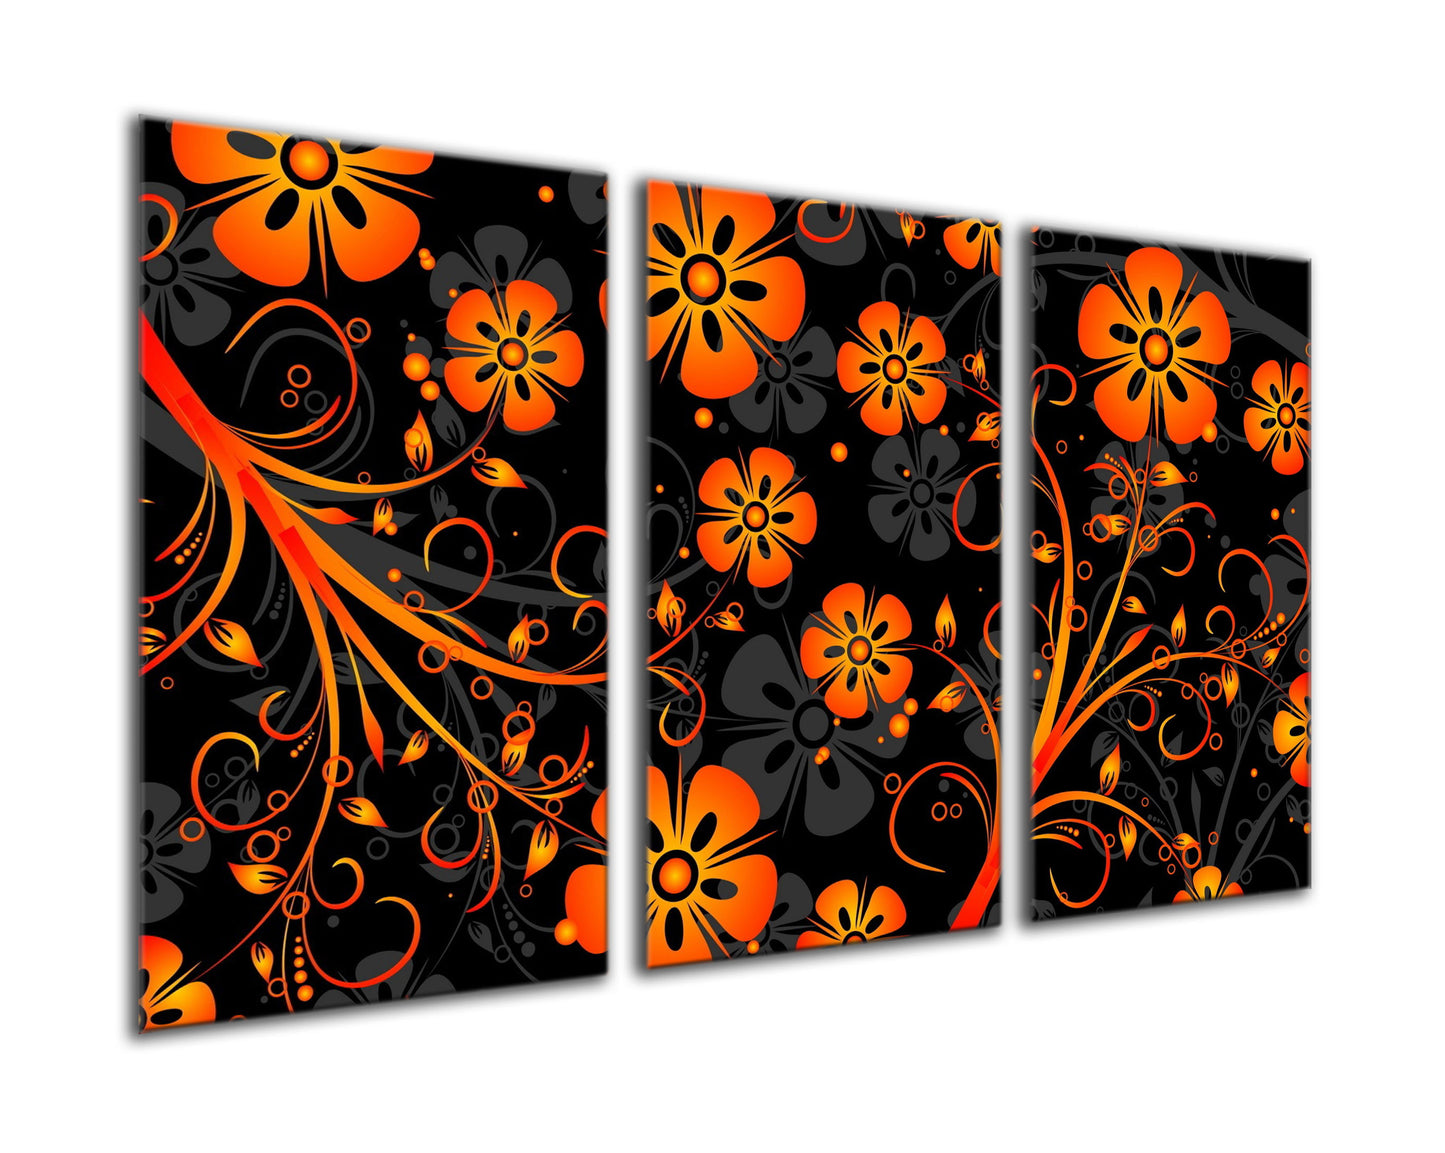 Orange and black floral design